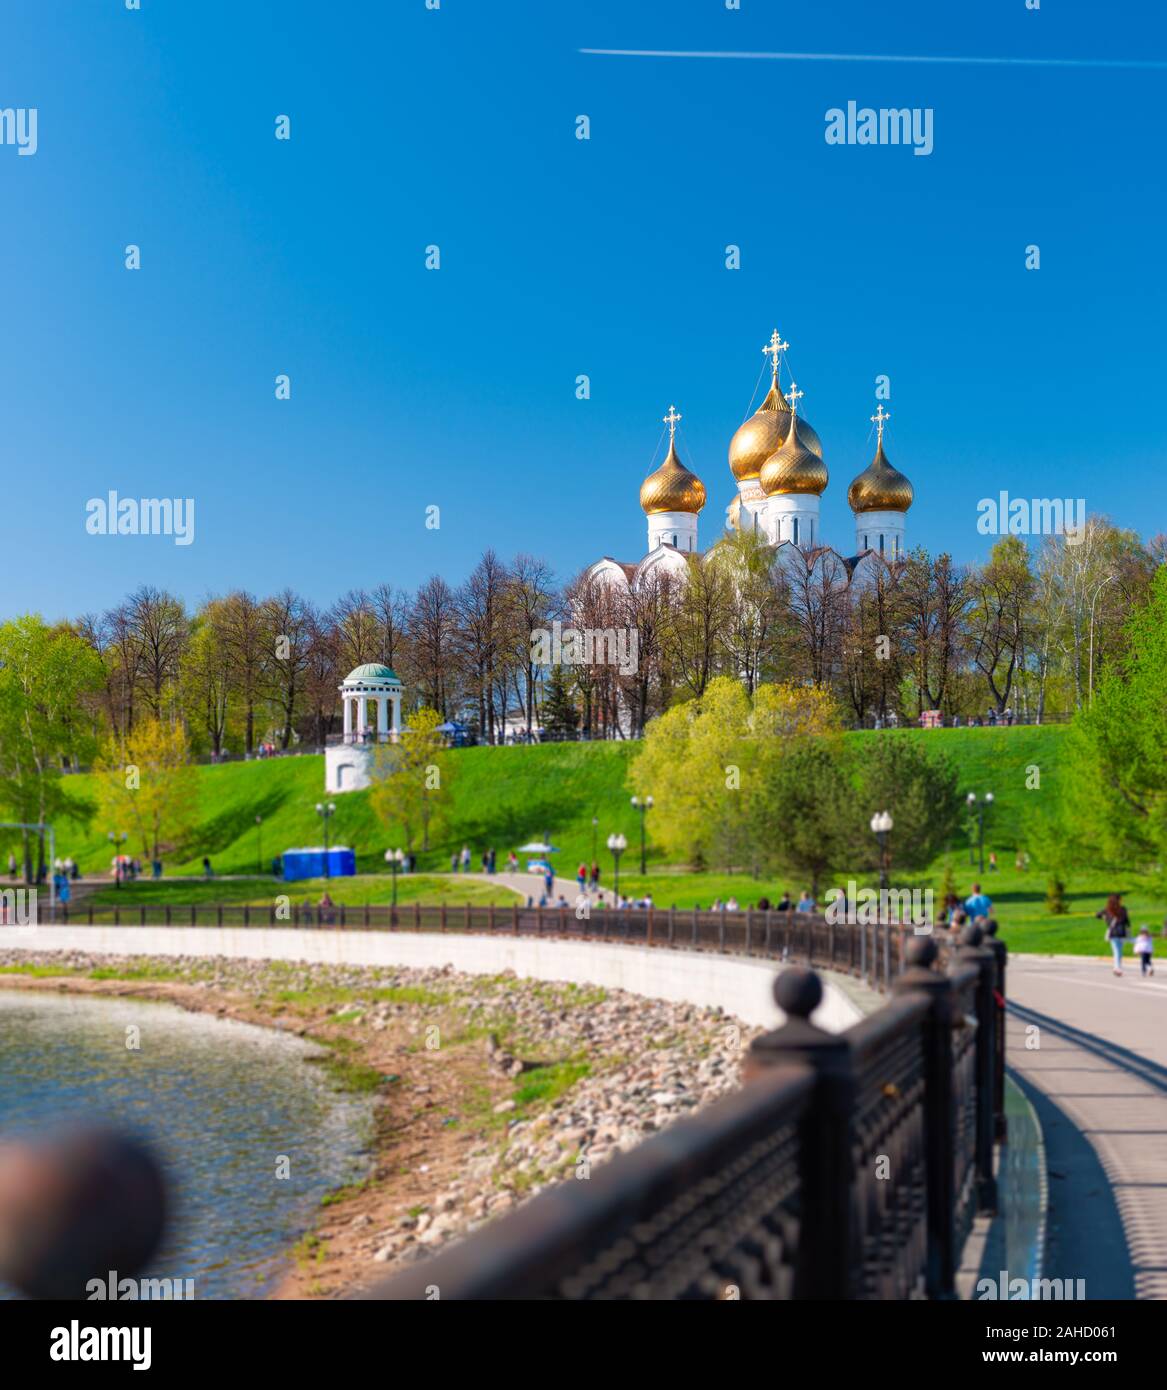 Vieille église à Yaroslavl, la Russie, l'Europe. Photo panoramique avec ciel bleu en arrière-plan. Voyages et la religion. Banque D'Images